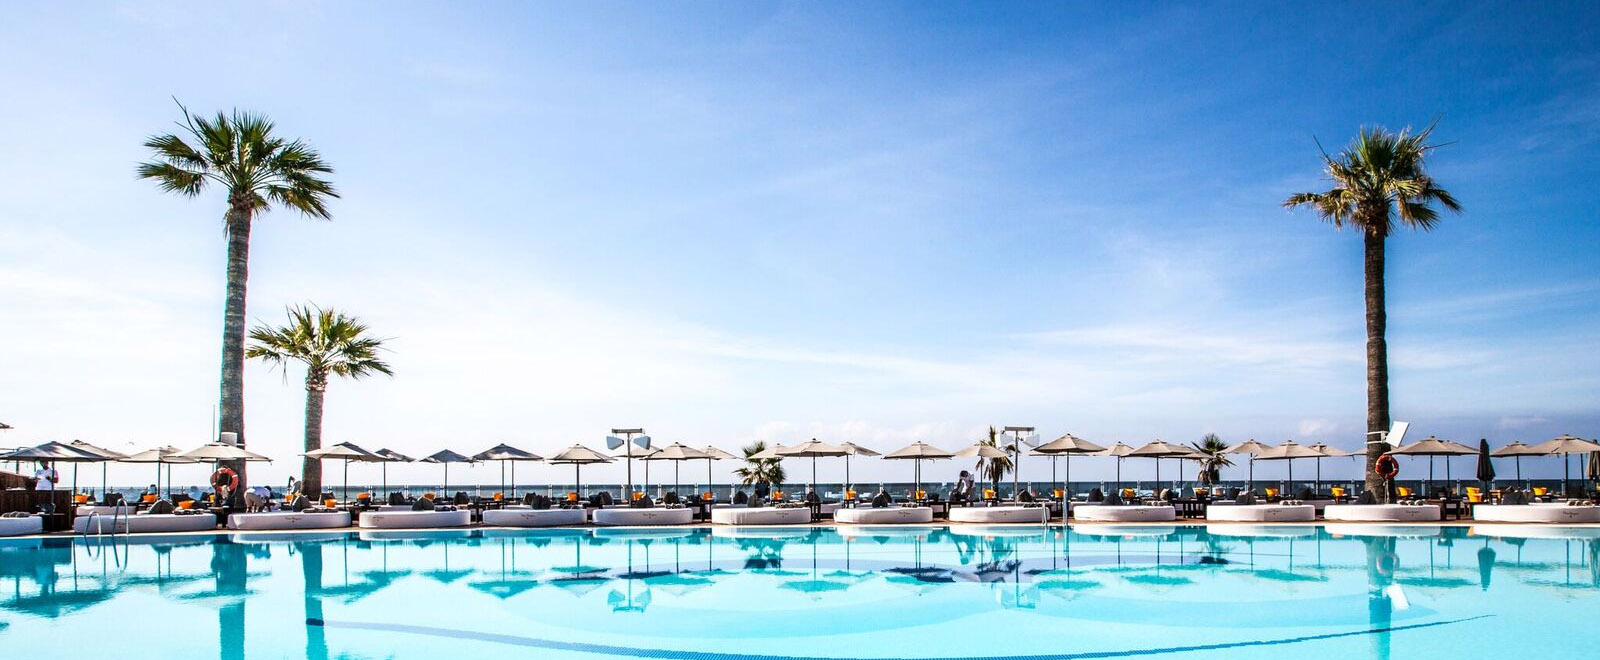 The Costa del Sol and its most representative beach clubs - Marbella Unique Properties - Ocean club